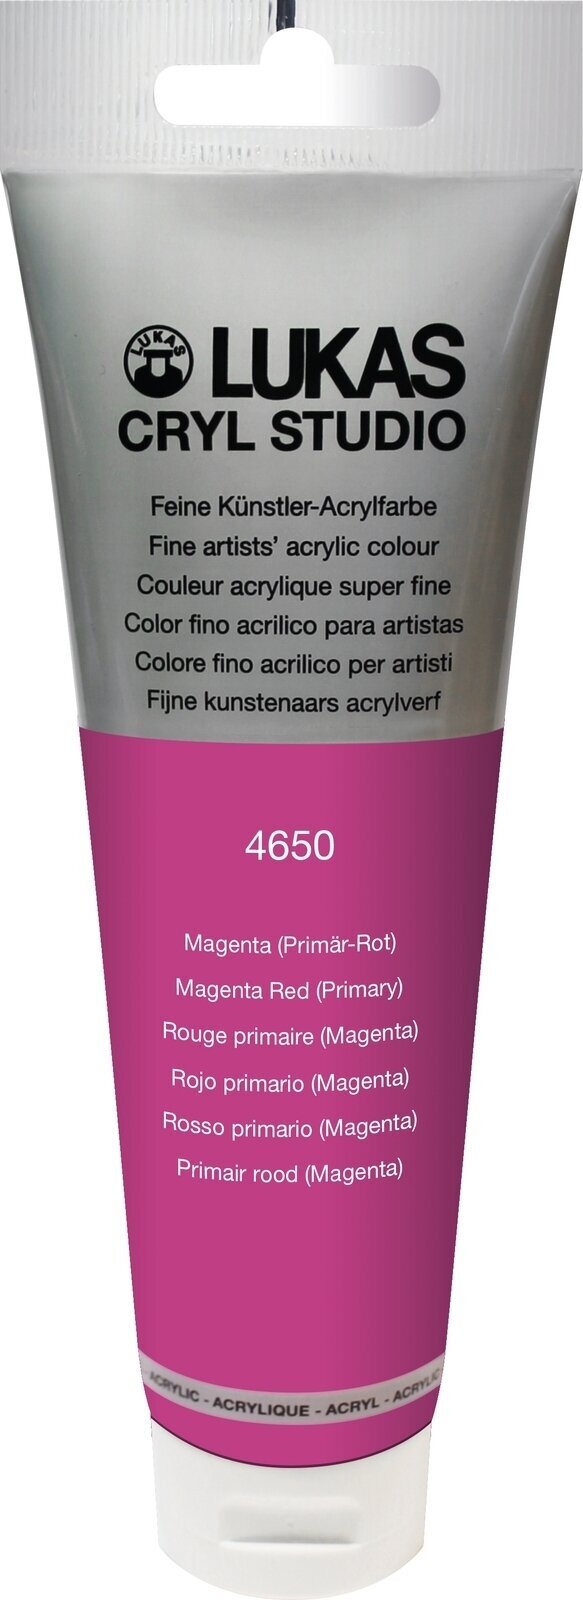 Akrylová farba Lukas Cryl Studio Acrylic Paint Plastic Tube Akrylová farba Magenta Red (Primary) 125 ml 1 ks